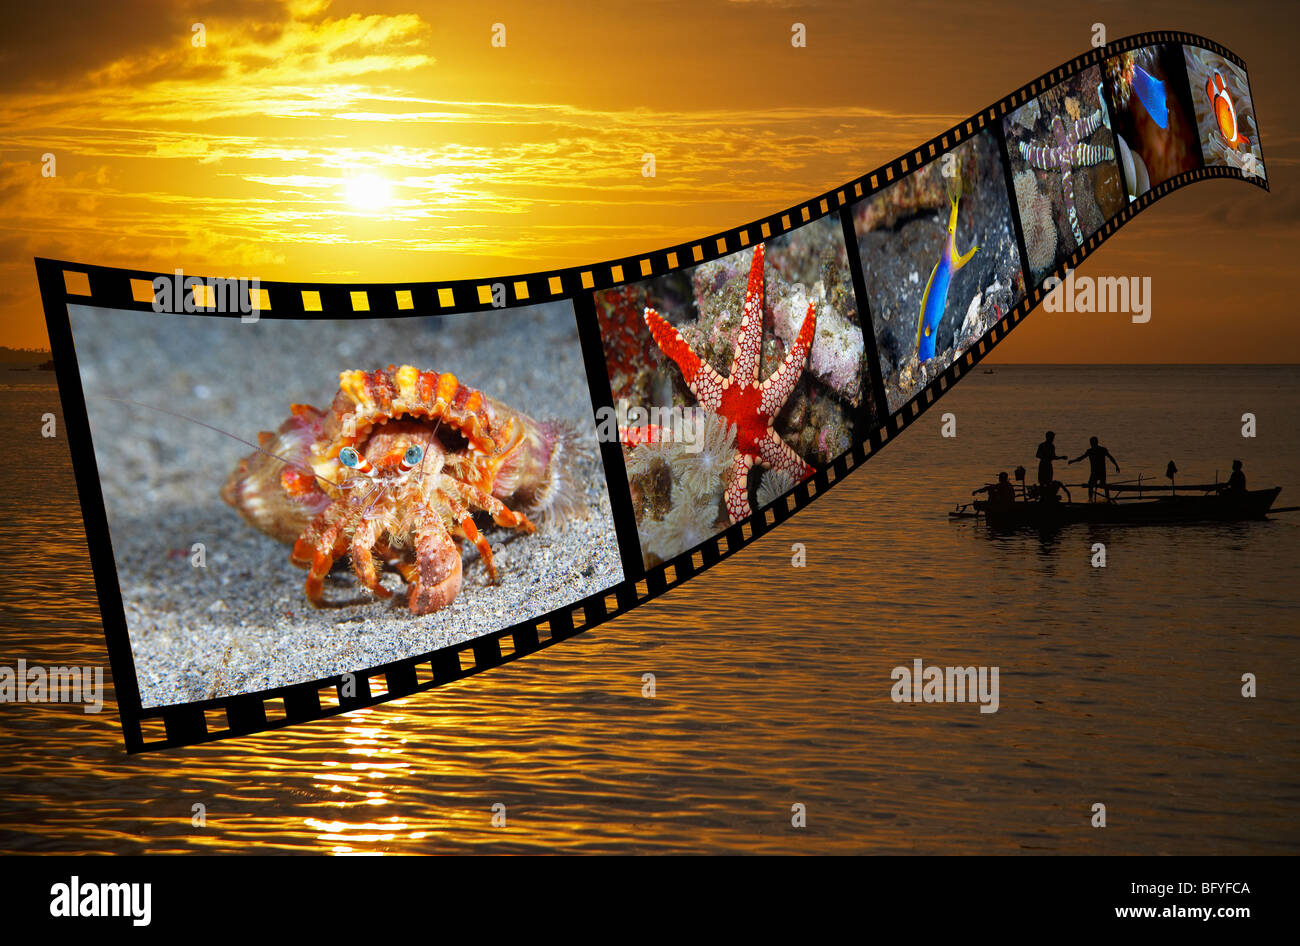 Les pêcheurs au coucher du soleil dans le nord de Sulawesi, Indonésie avec une bande de film de créatures marines tropicales superposée sur l'image. Banque D'Images